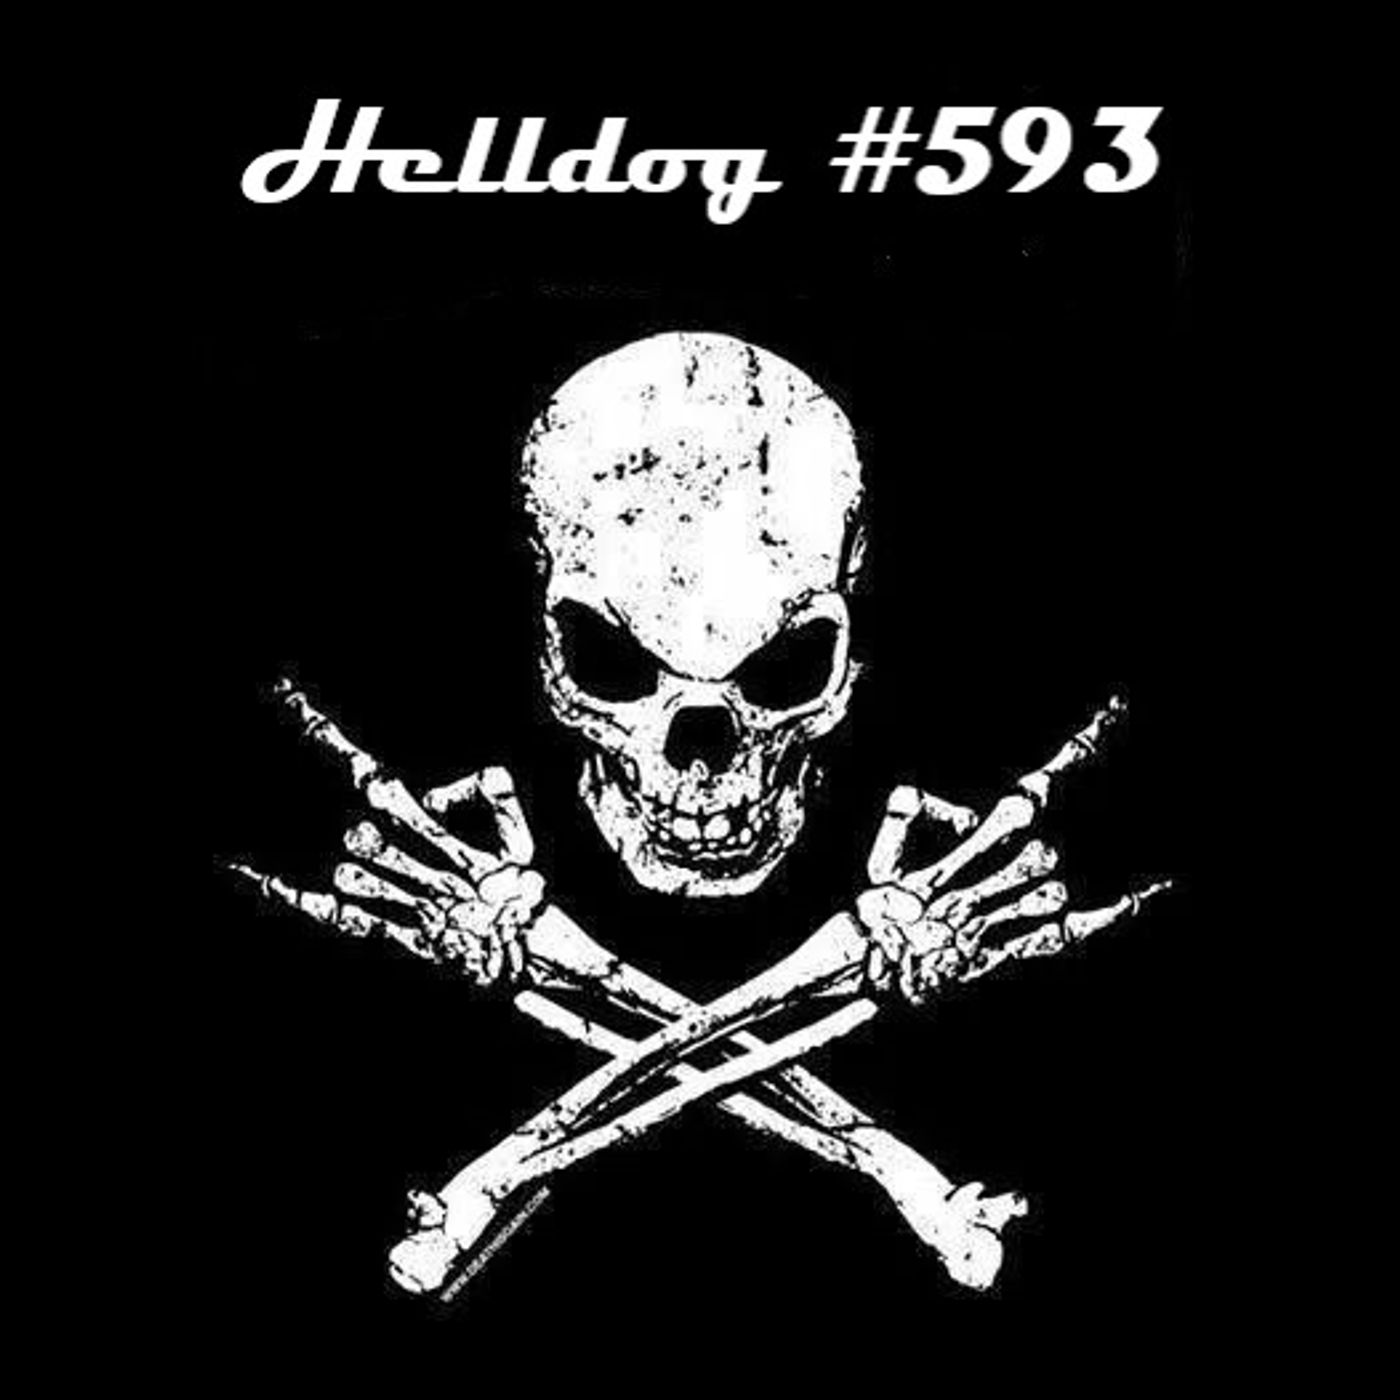 Musicast do Helldog #593 no ar!